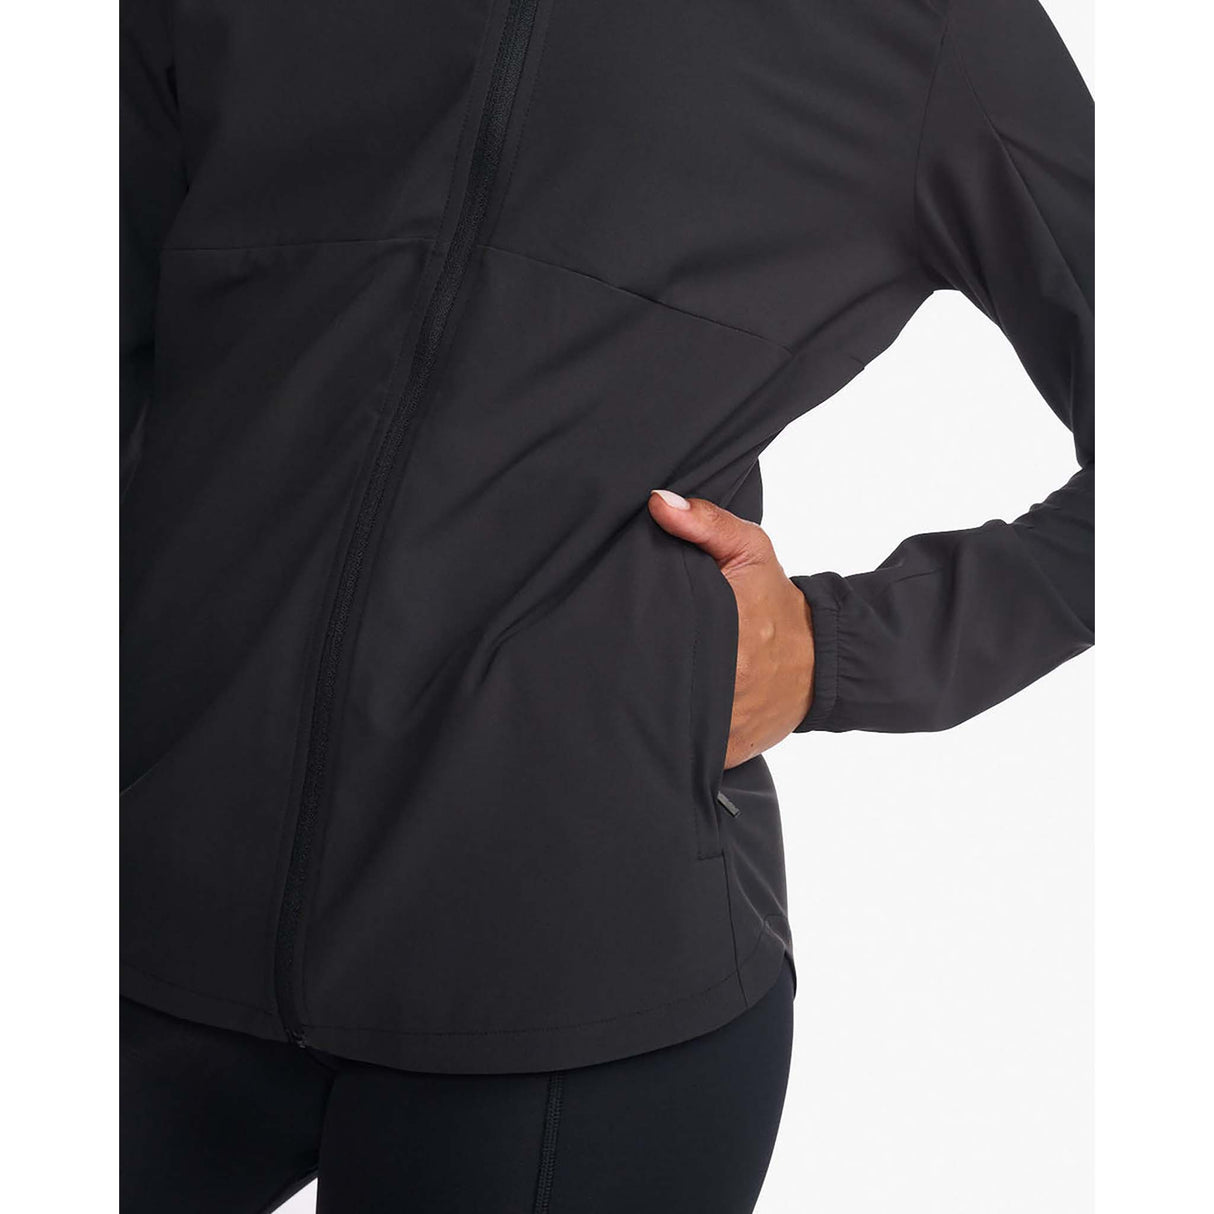 2XU Areo jacket de course noir réfléchissant femme poche